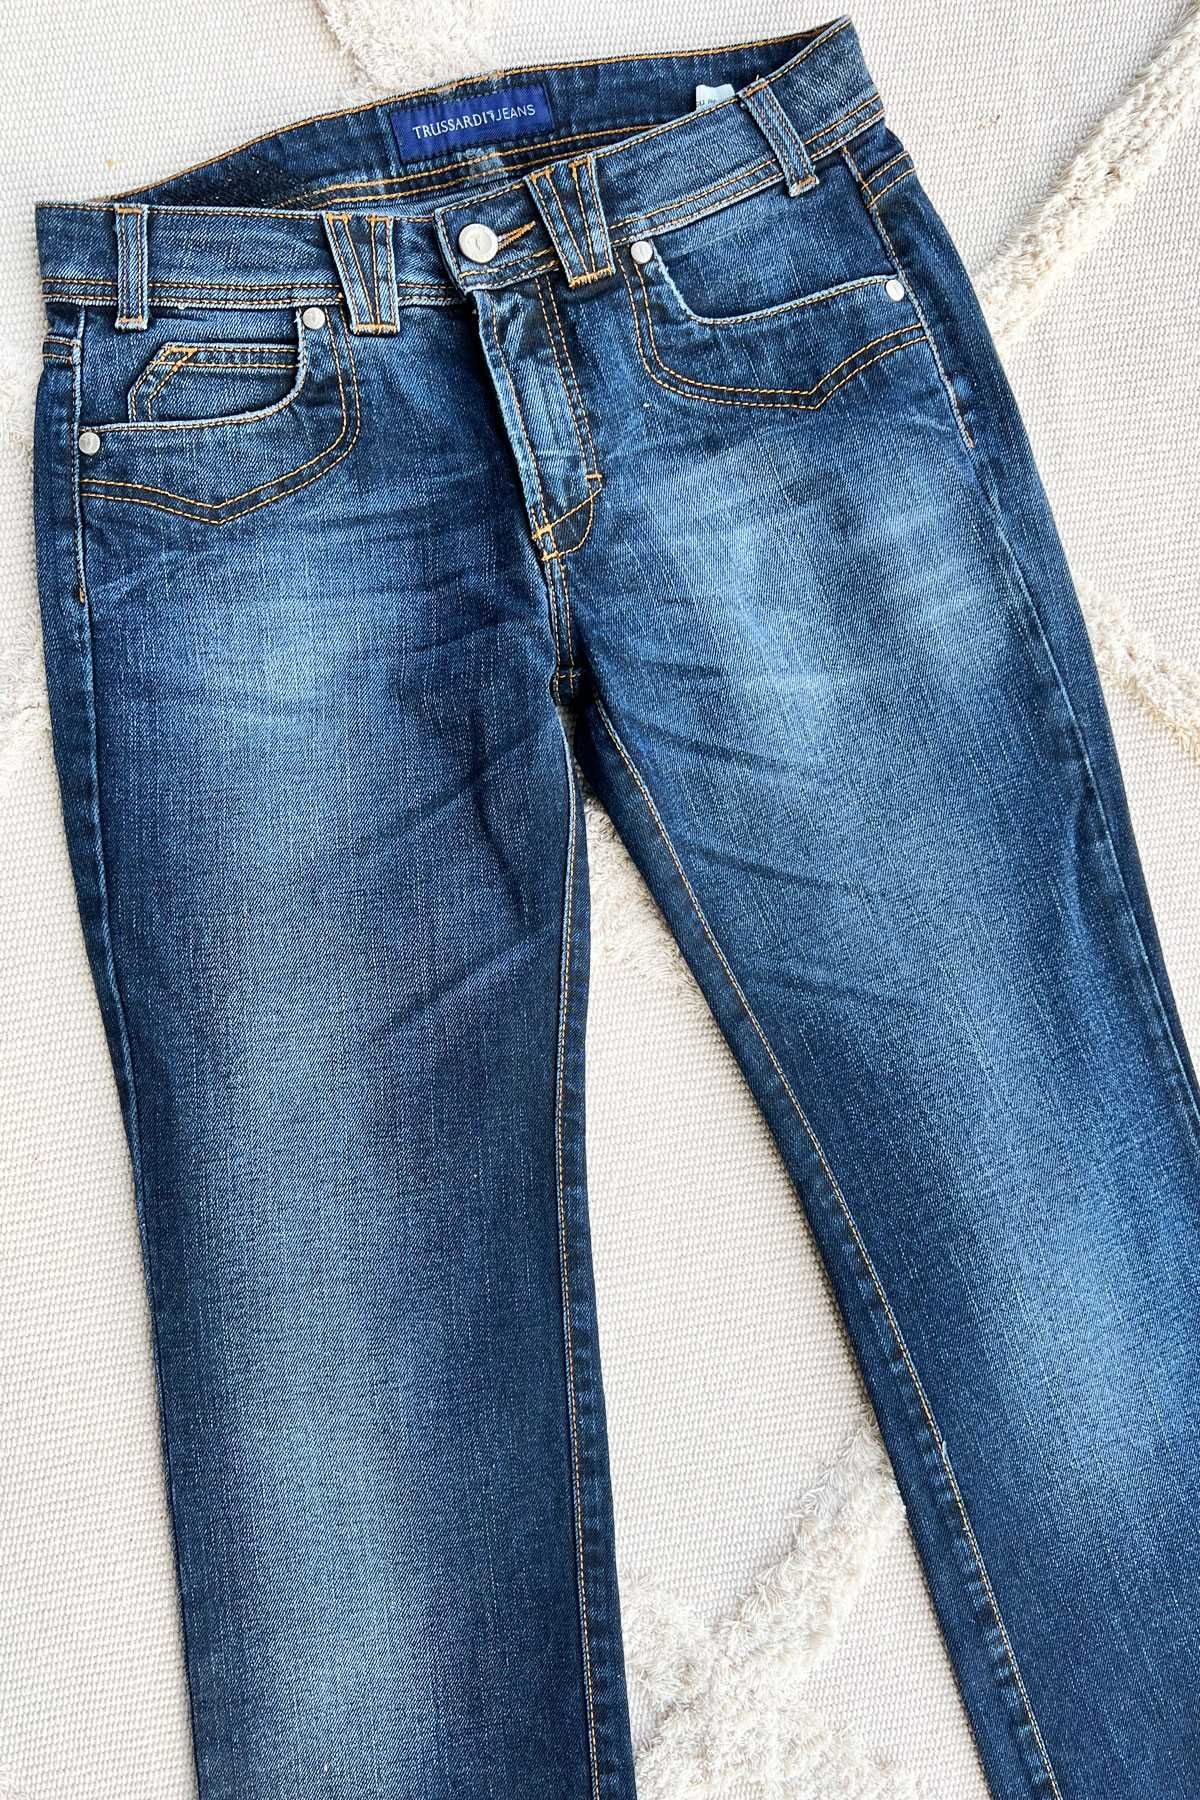 Trussardi Jeans spodnie granatowe jeansy niski stan rozm. 26 pas 76 cm